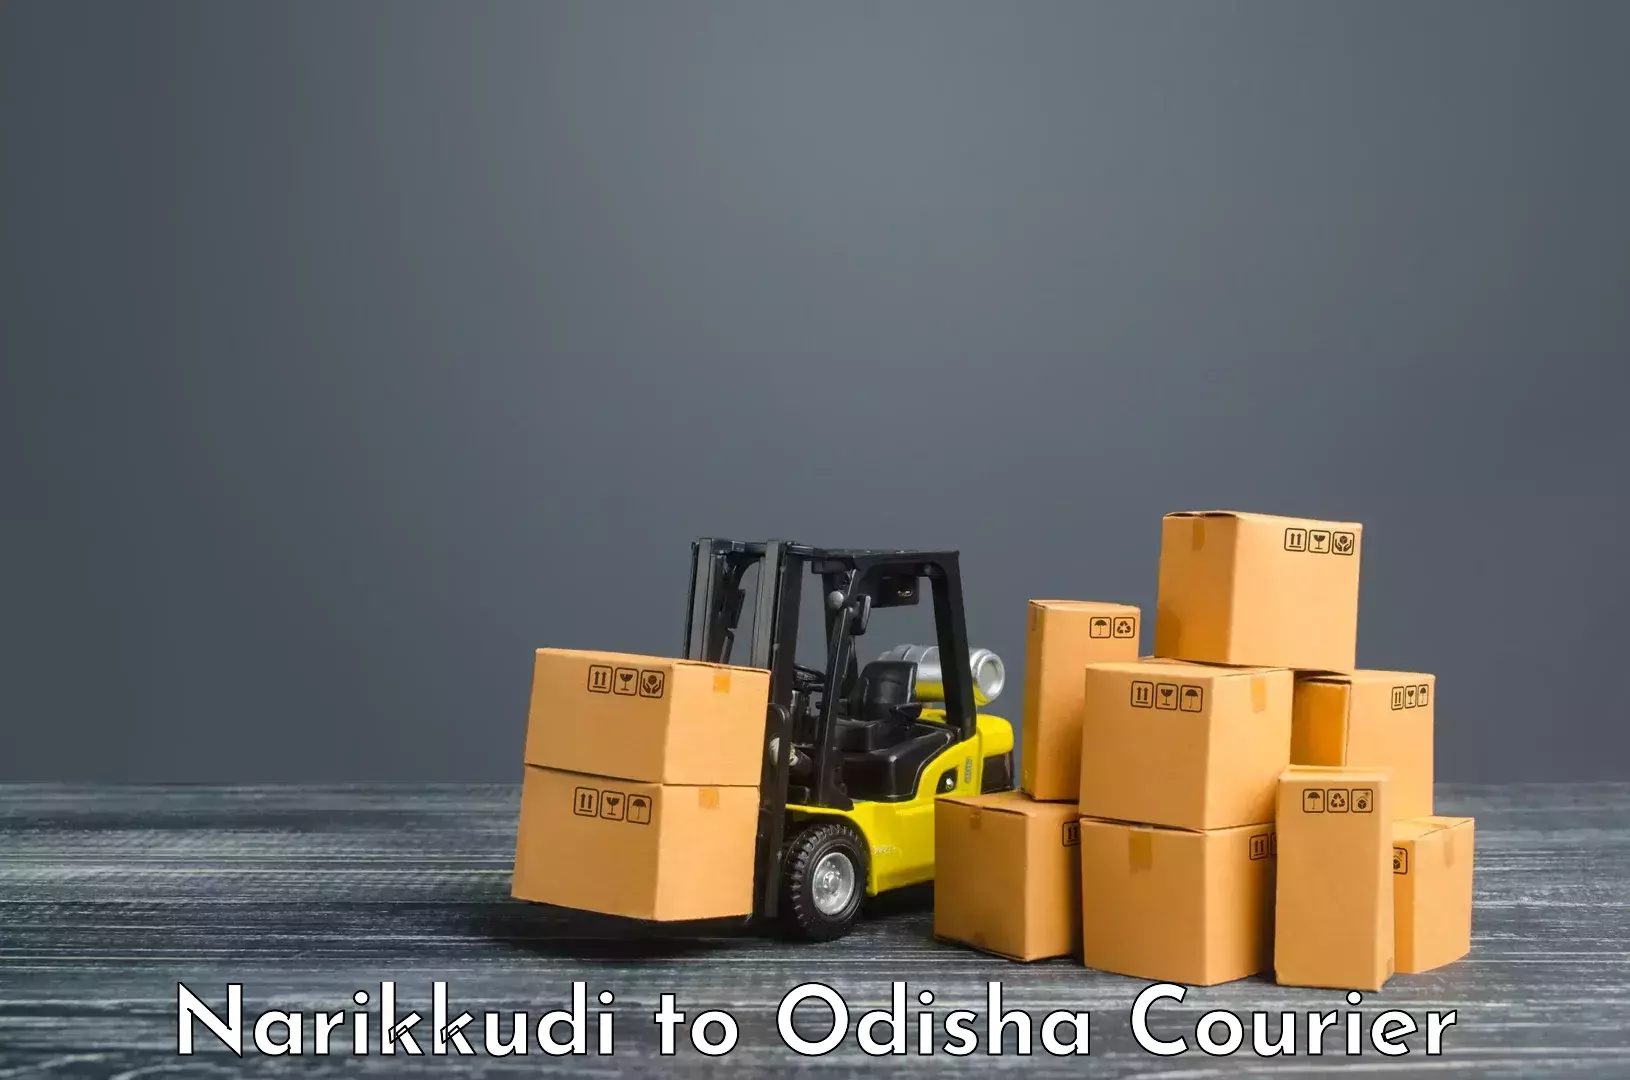 Budget-friendly shipping Narikkudi to Mathili